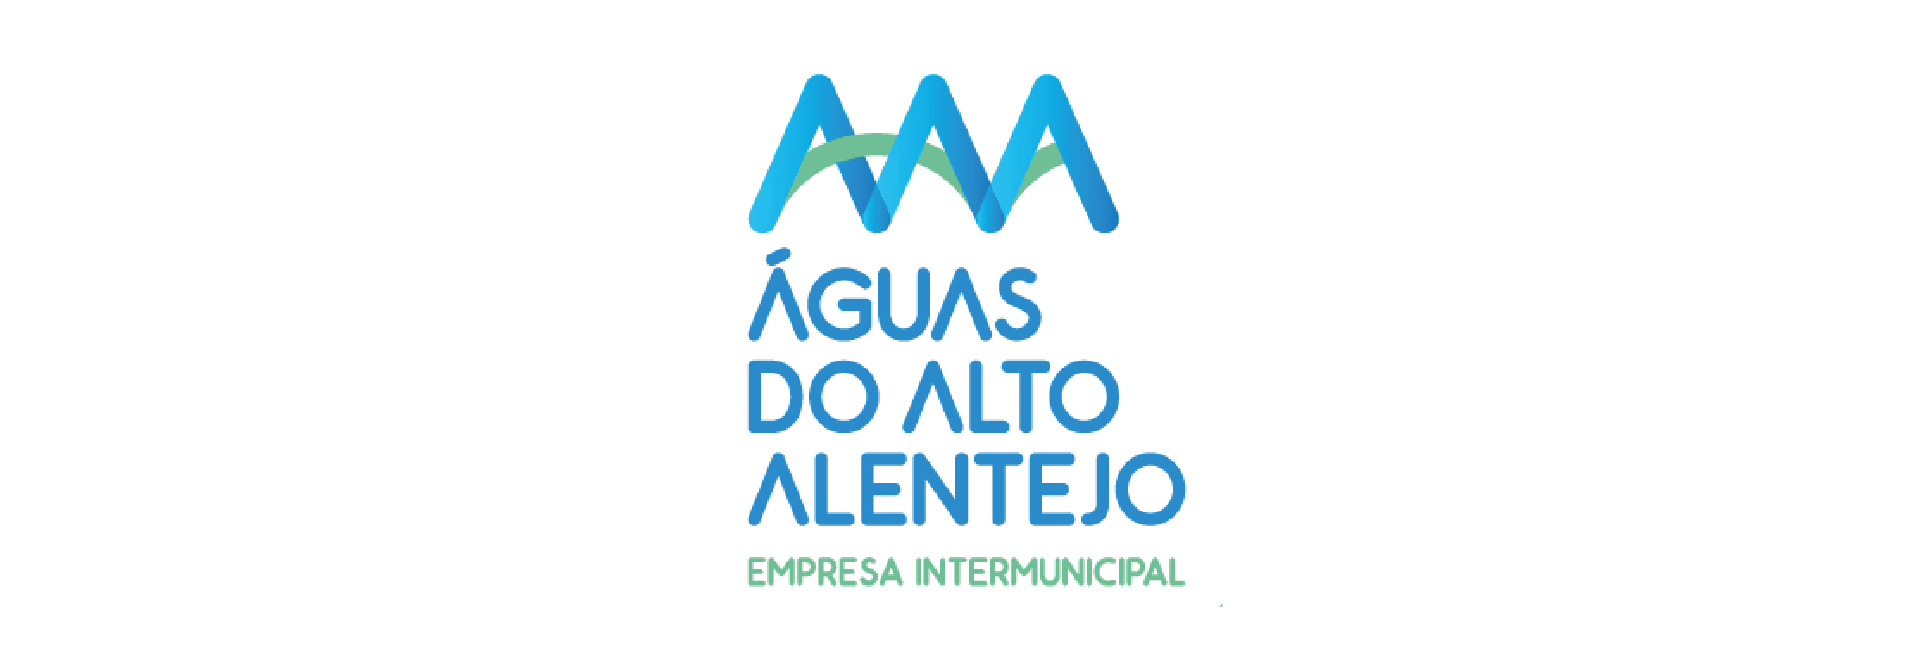 (Português) Águas do Alto Alentejo – Postos de atendimento encerrados